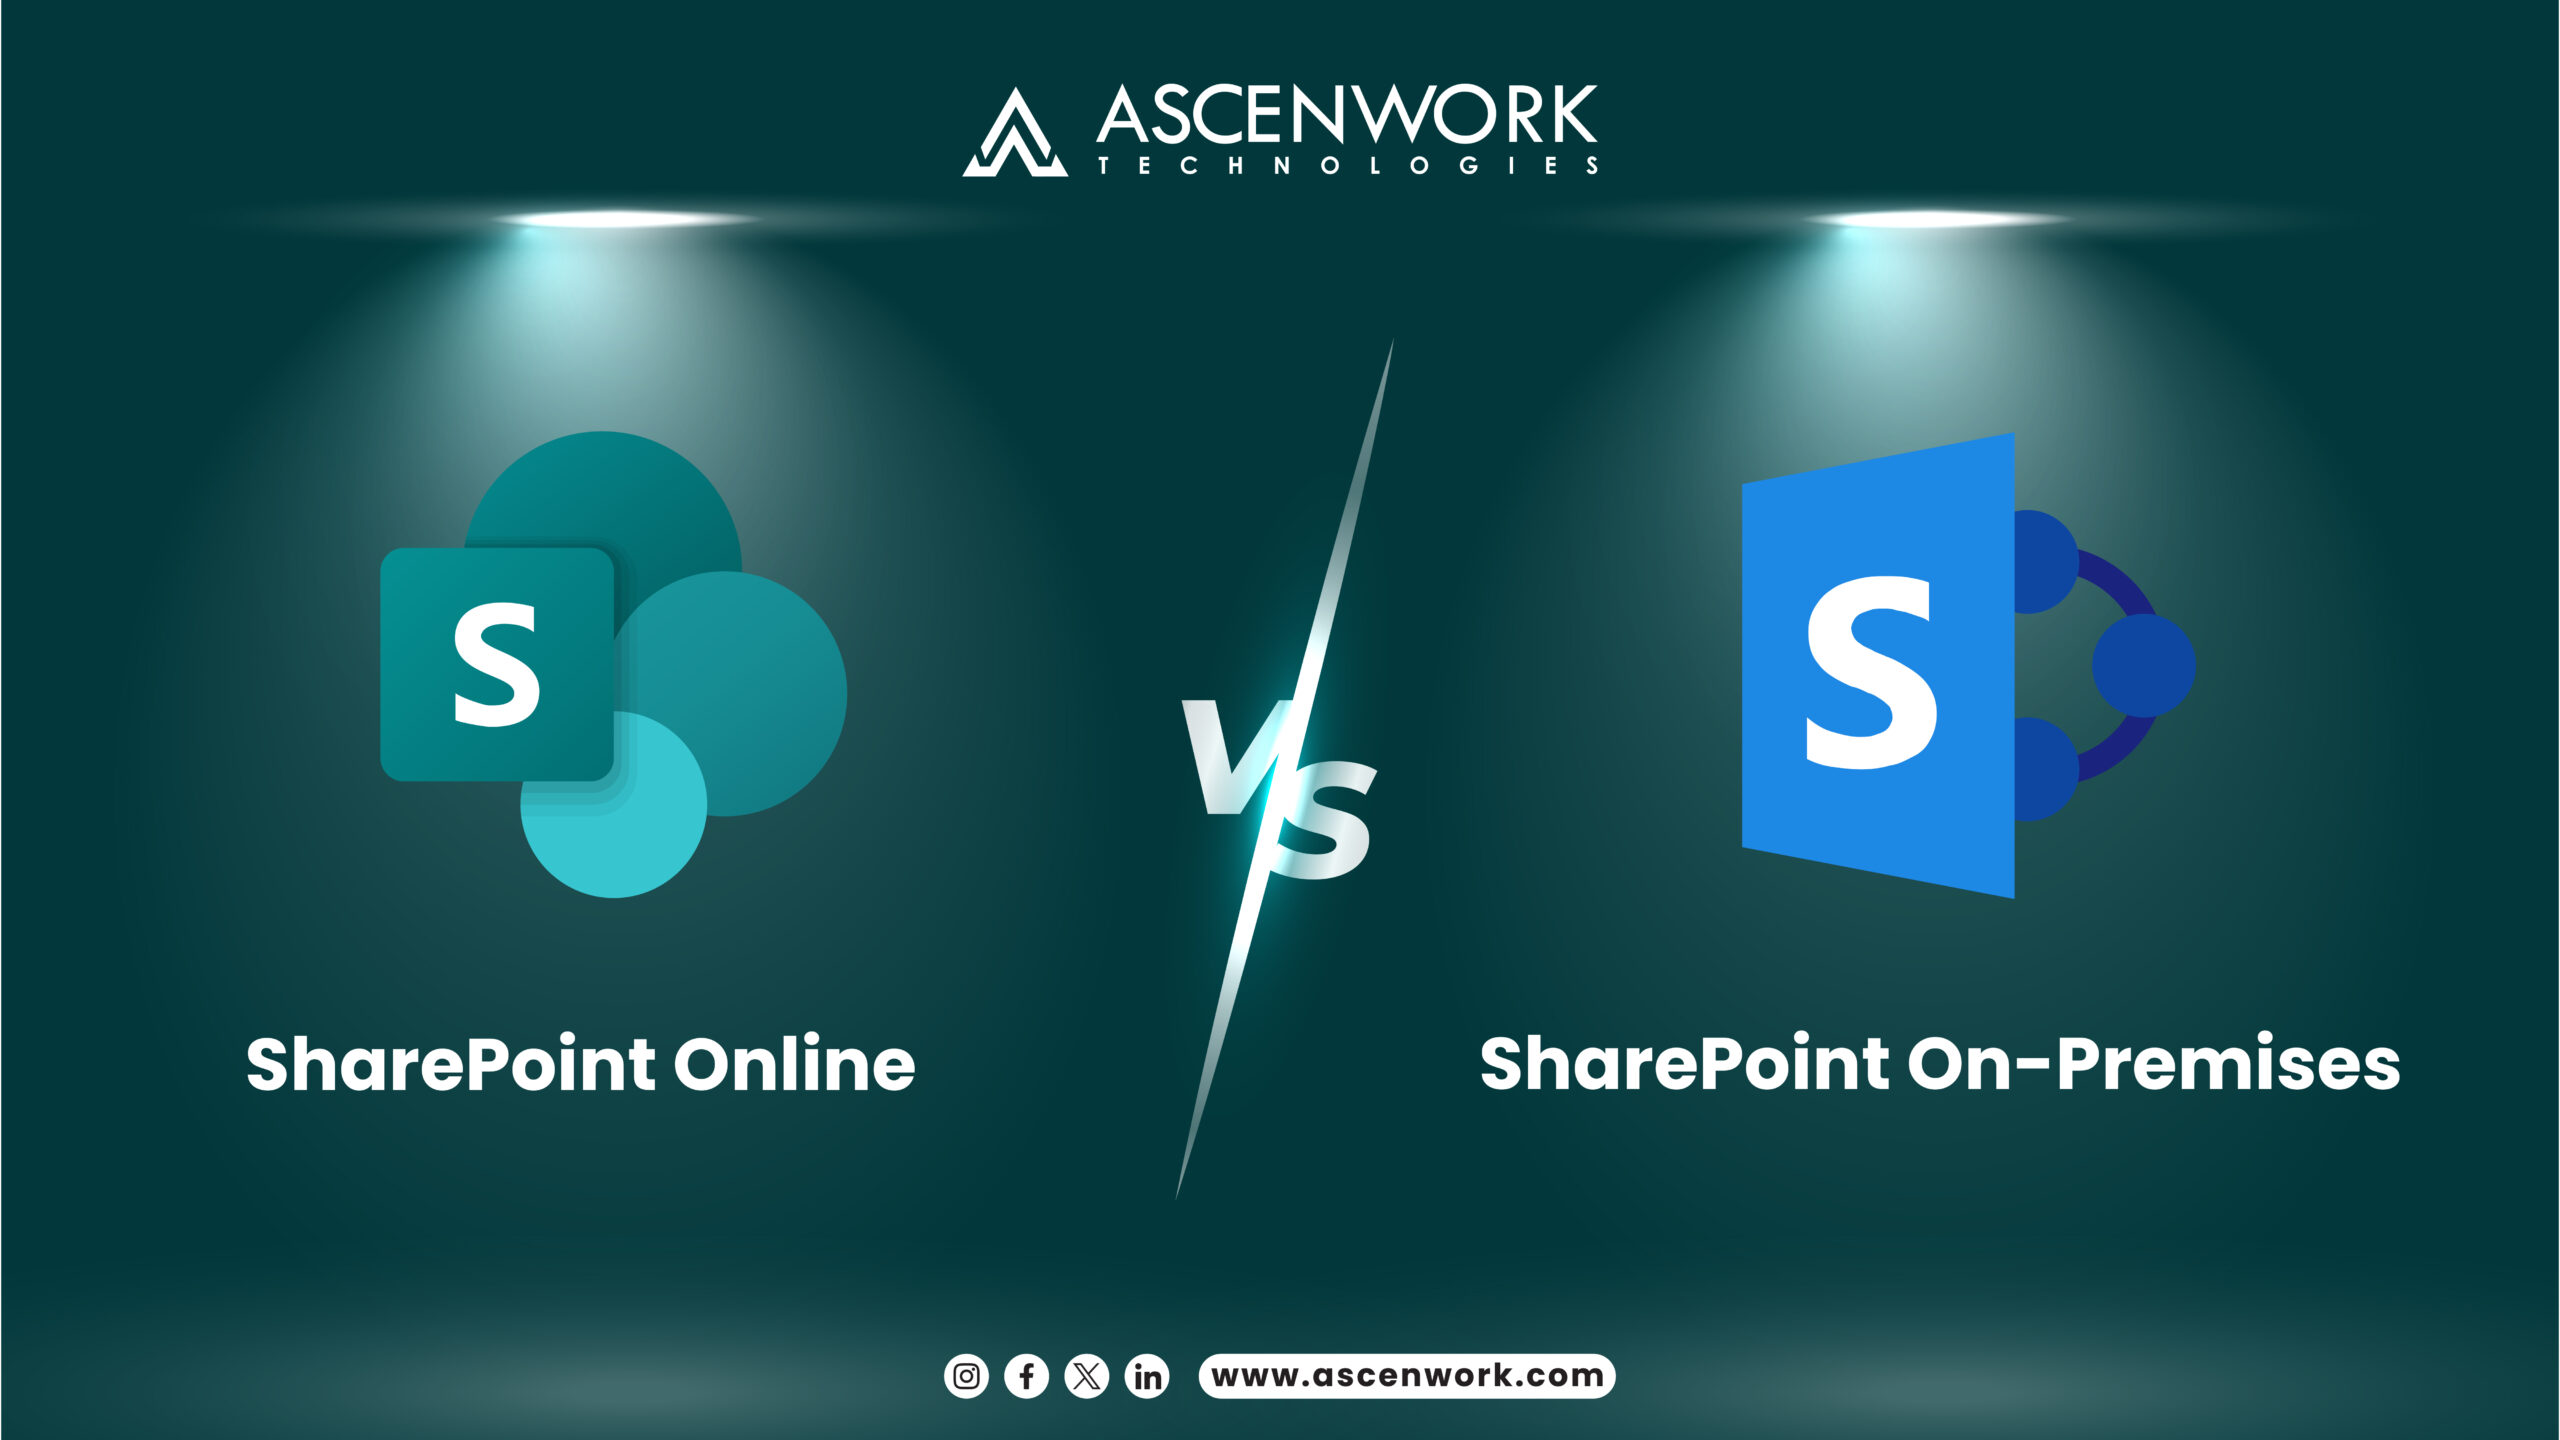 SharePoint Online-vs.-SharePoint On-Premises